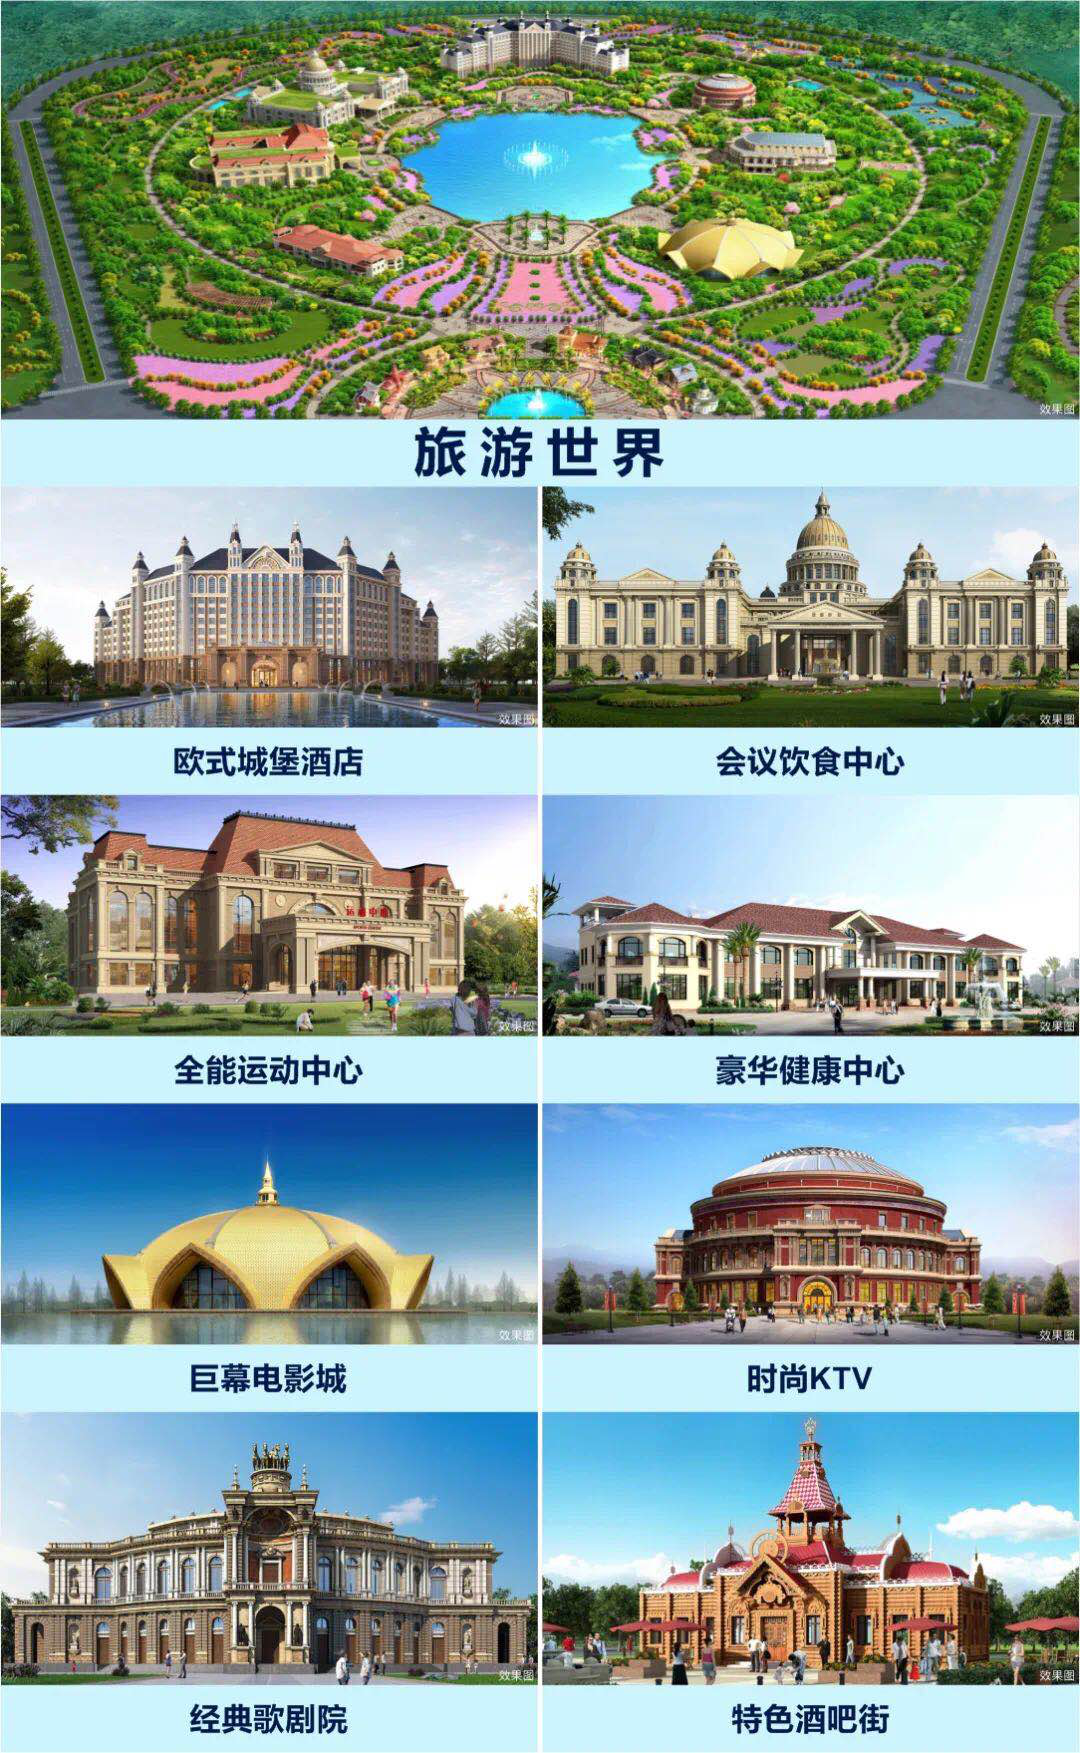 恒大文旅城&養生谷亮相在即 寧滁區域發展迎重碼-中國網地産